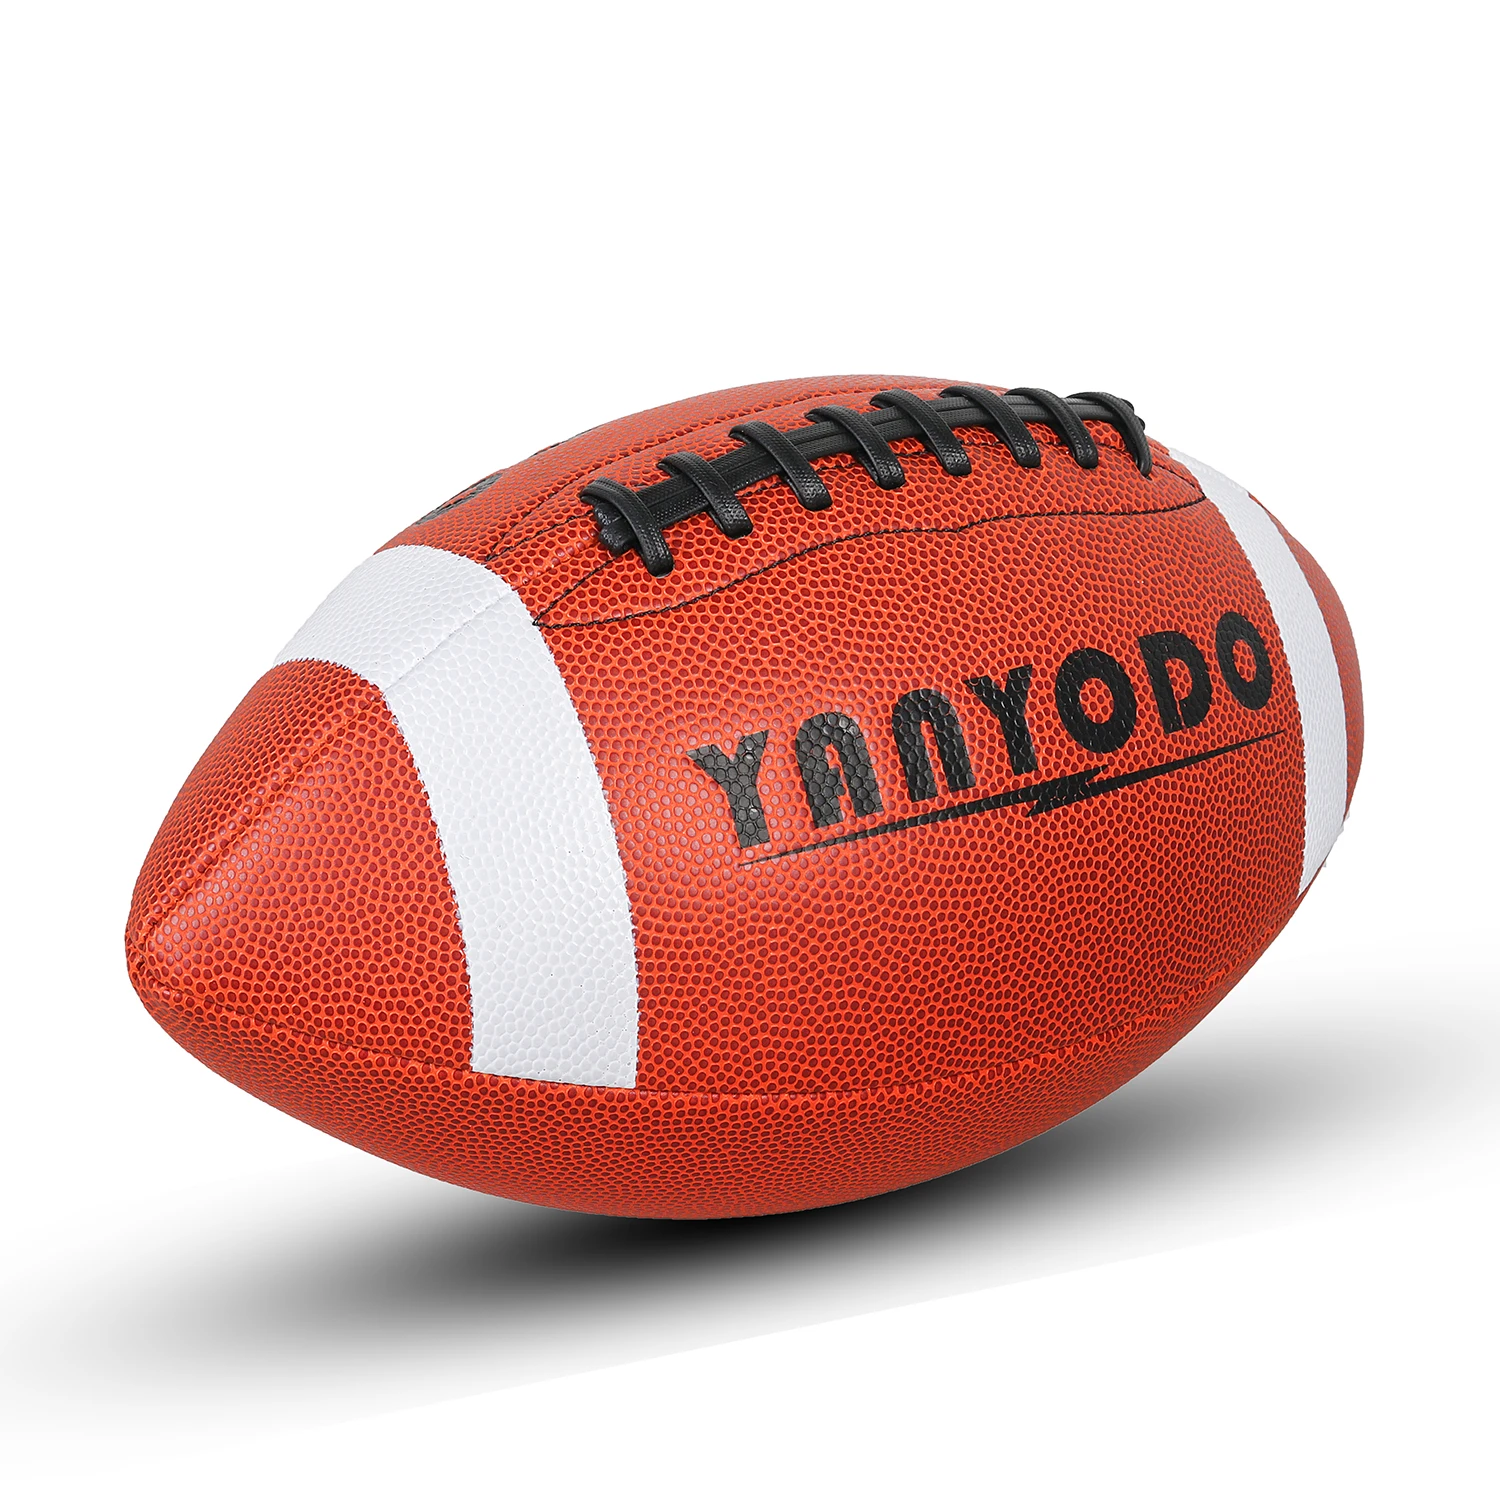 YANYODO Размер 9 Американский футбол, супер сцепление Композитный Футбол обучение и отдых игры, микрофибра кожаный чехол для молодежи